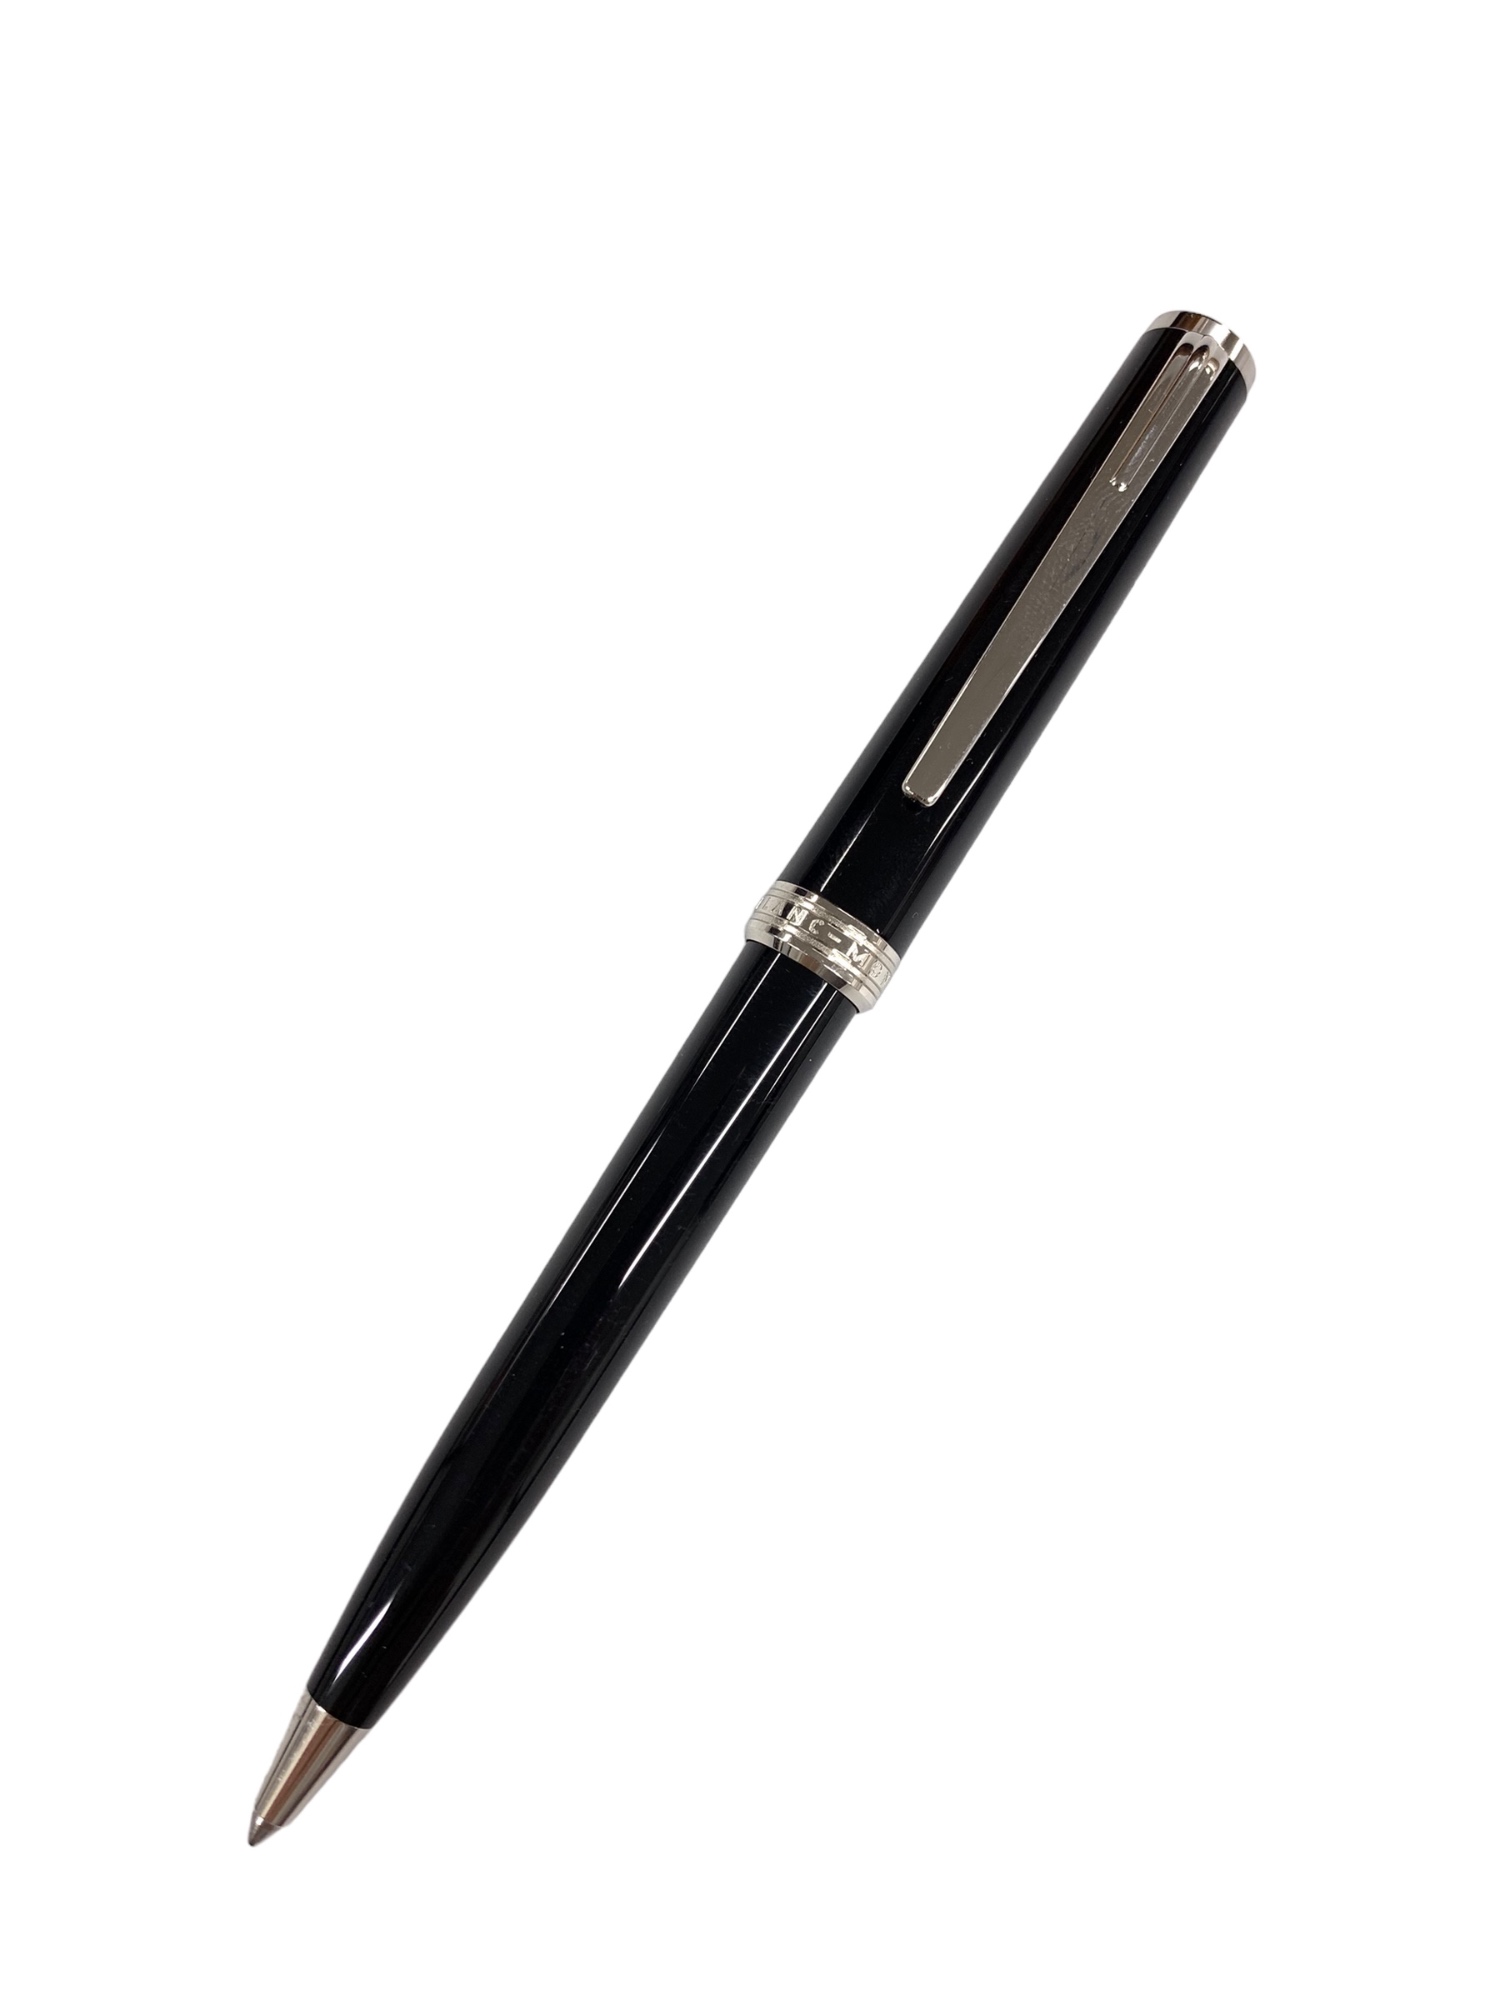 MONTBLANC（筆記具、時計） モンブラン PIX ホワイトゴールドコーティング ボールペン MB117659 ボールペンの商品画像